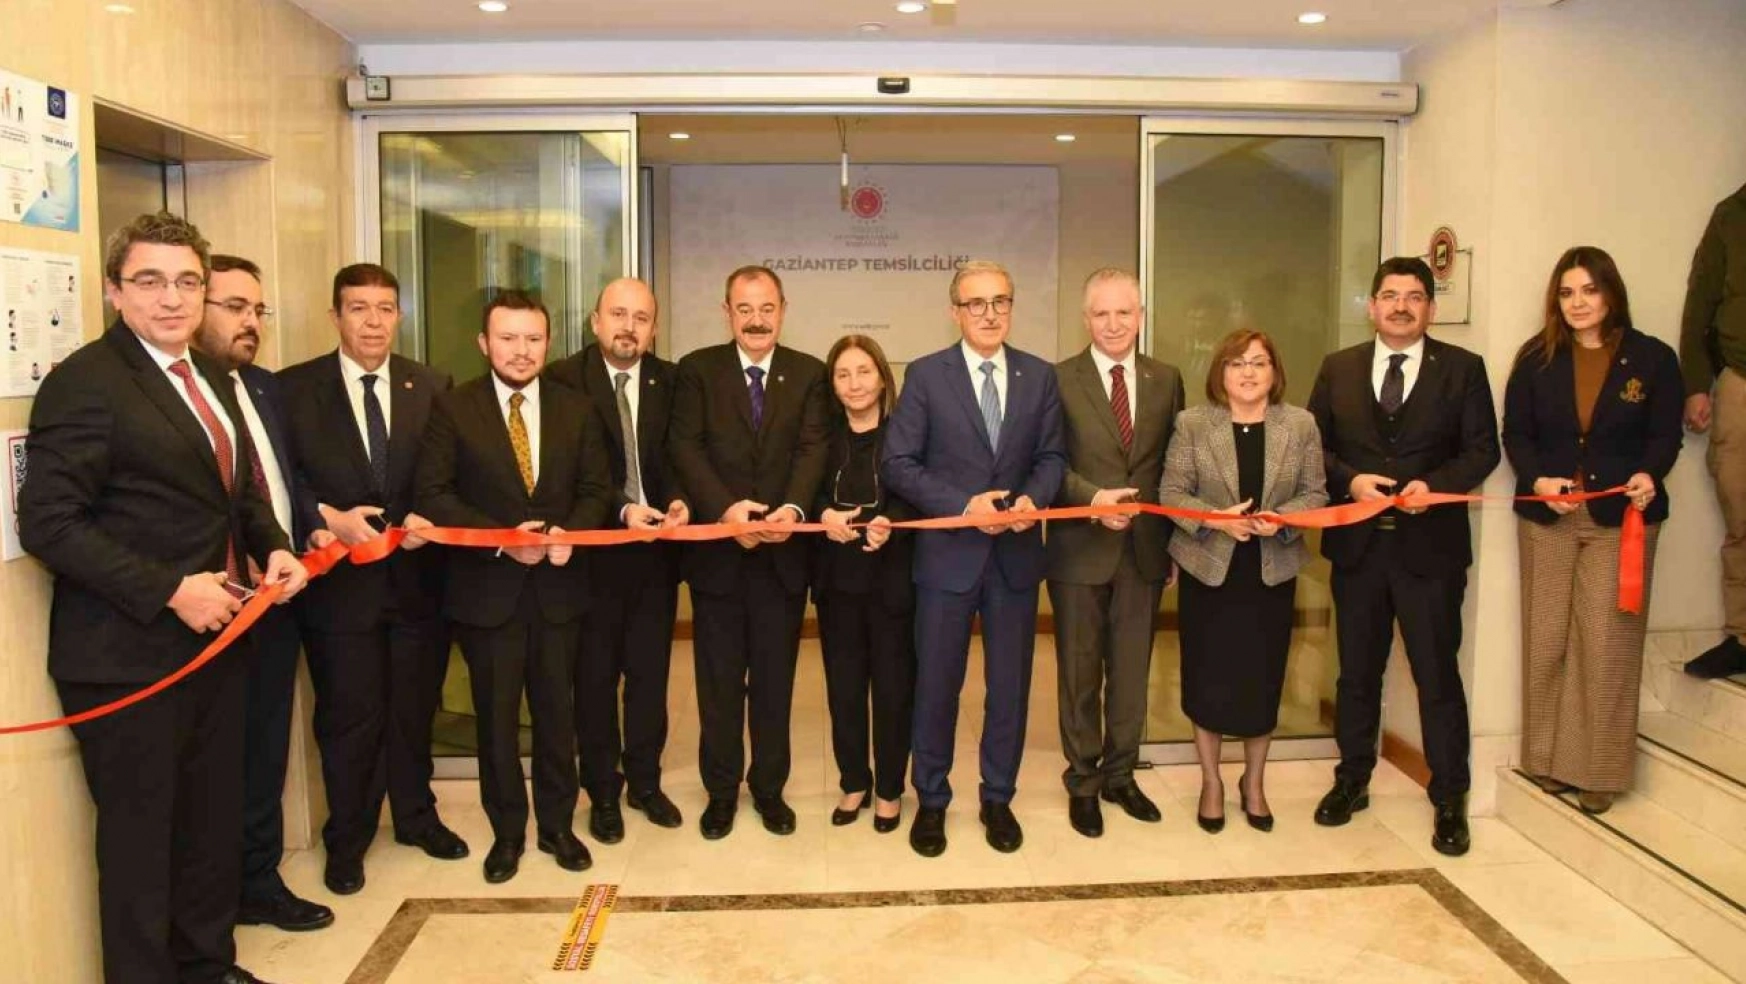 Türkiye'de bir ilk: Savunma Sanayi Başkanlığı Gaziantep temsilciliği açıldı